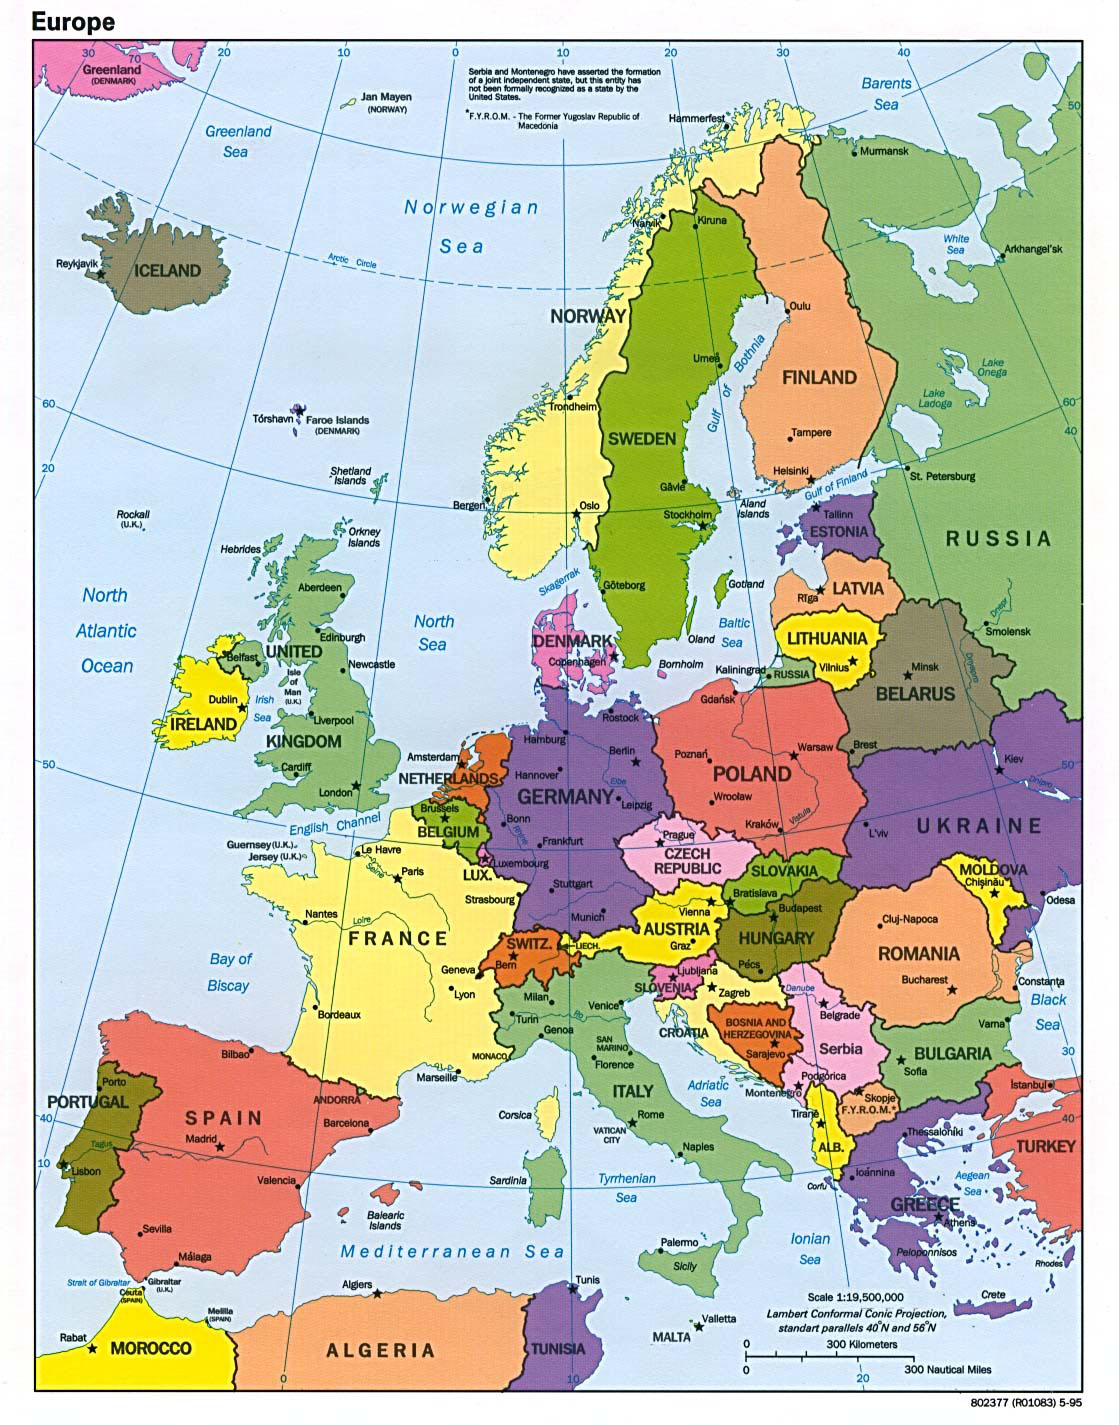 EUtopia: The Myth of 'Europe'